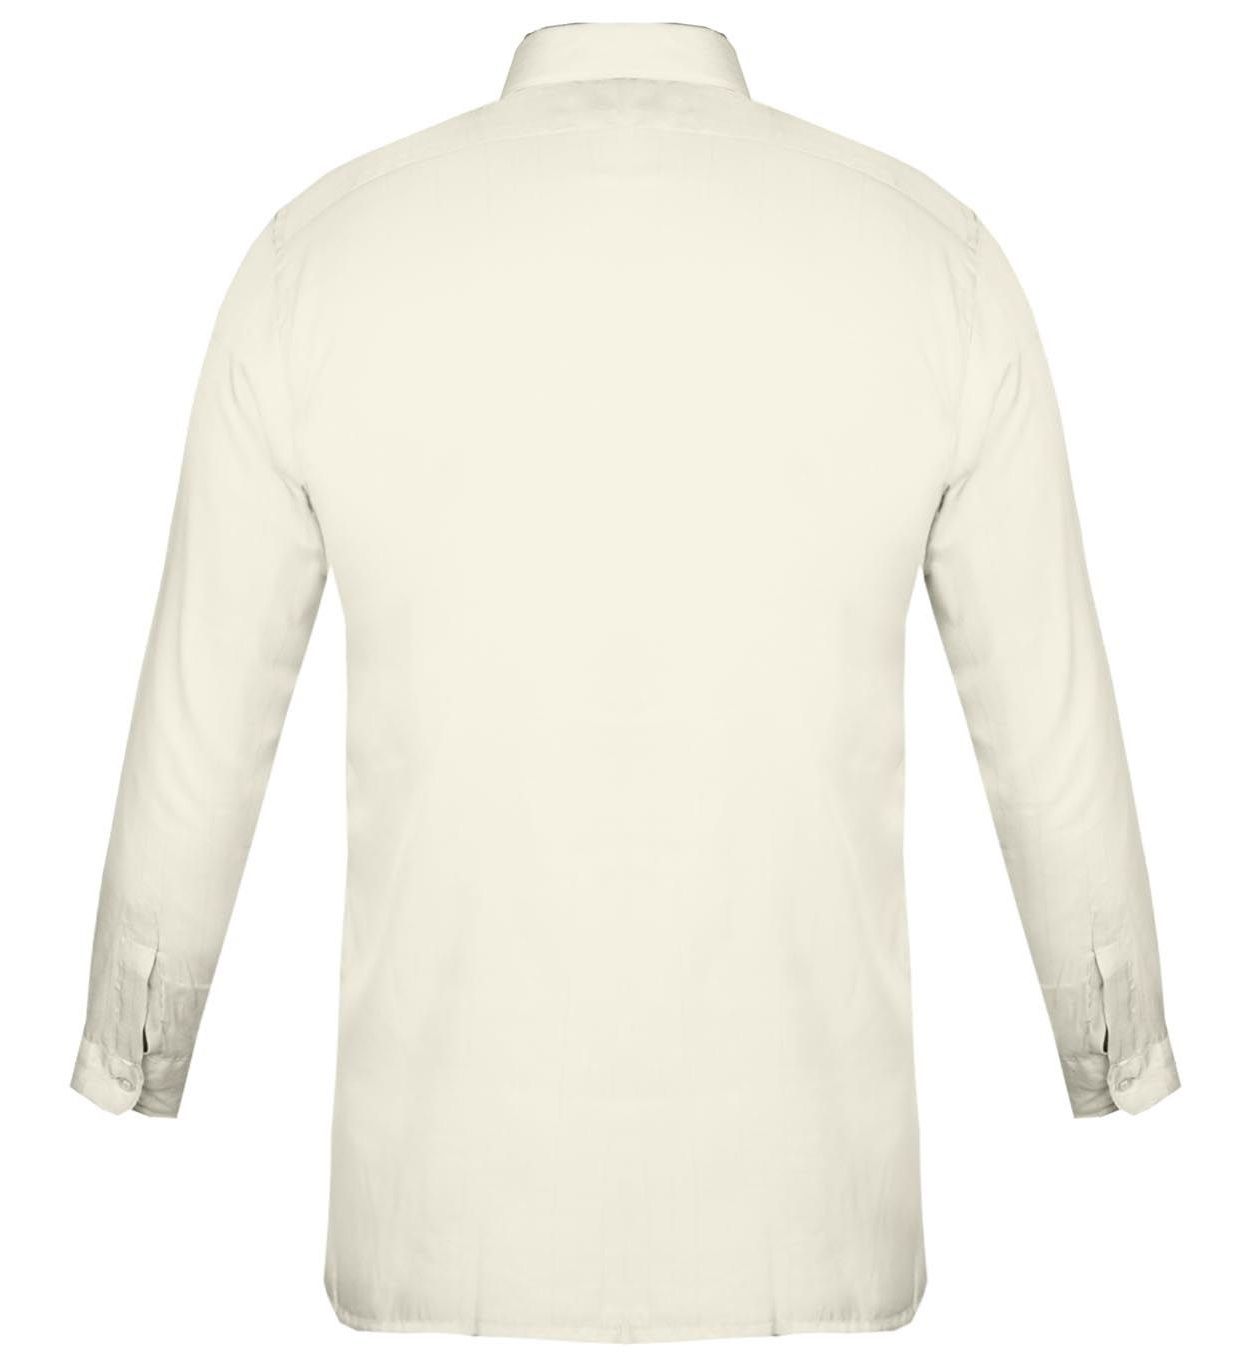 پیراهن مردانه کد PM011 رنگ شیری